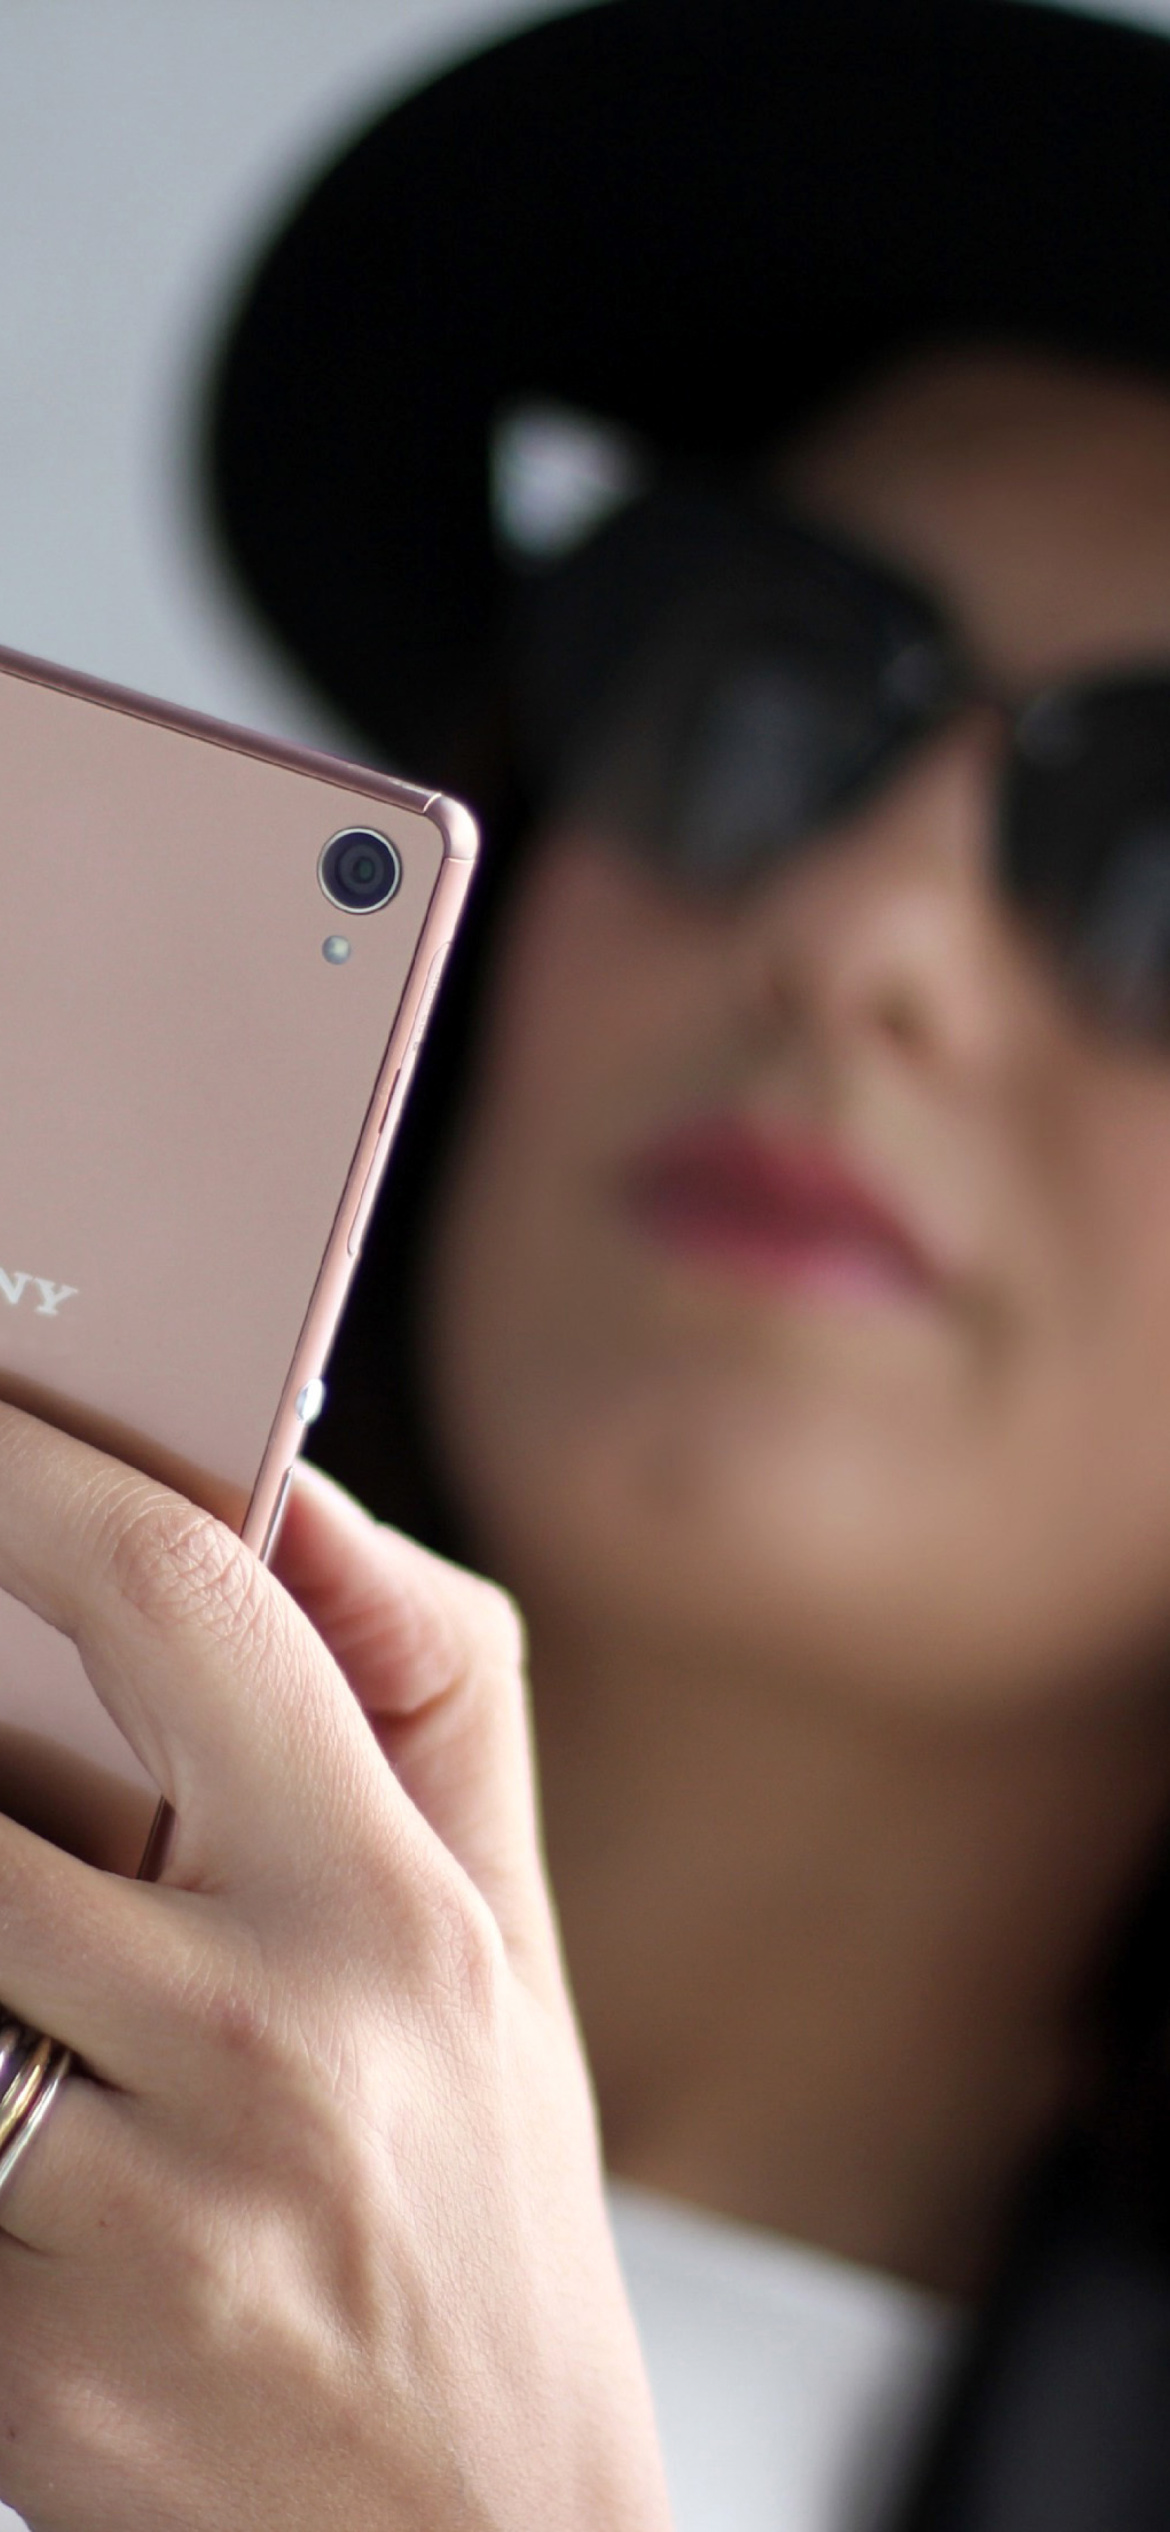 Sony Xperia Z3 Selfie wallpaper 1170x2532